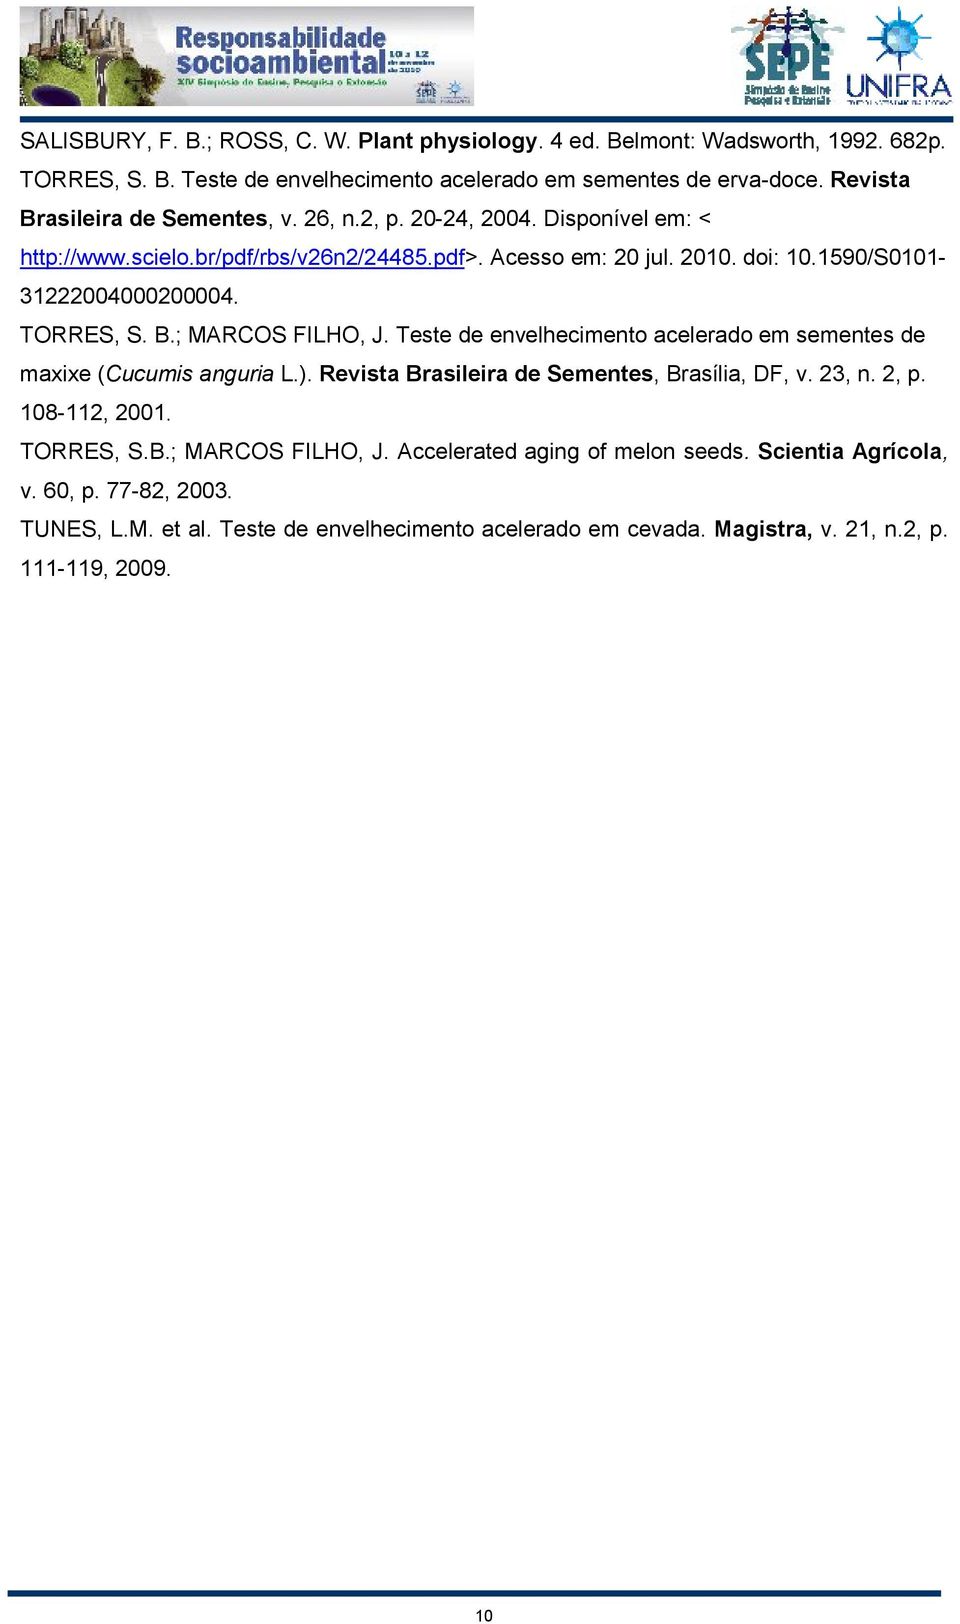 TORRES, S. B.; MARCOS FILHO, J. Teste de envelhecimento acelerado em sementes de maxixe (Cucumis anguria L.). Revista Brasileira de Sementes, Brasília, DF, v. 23, n. 2, p. 108-112, 2001.